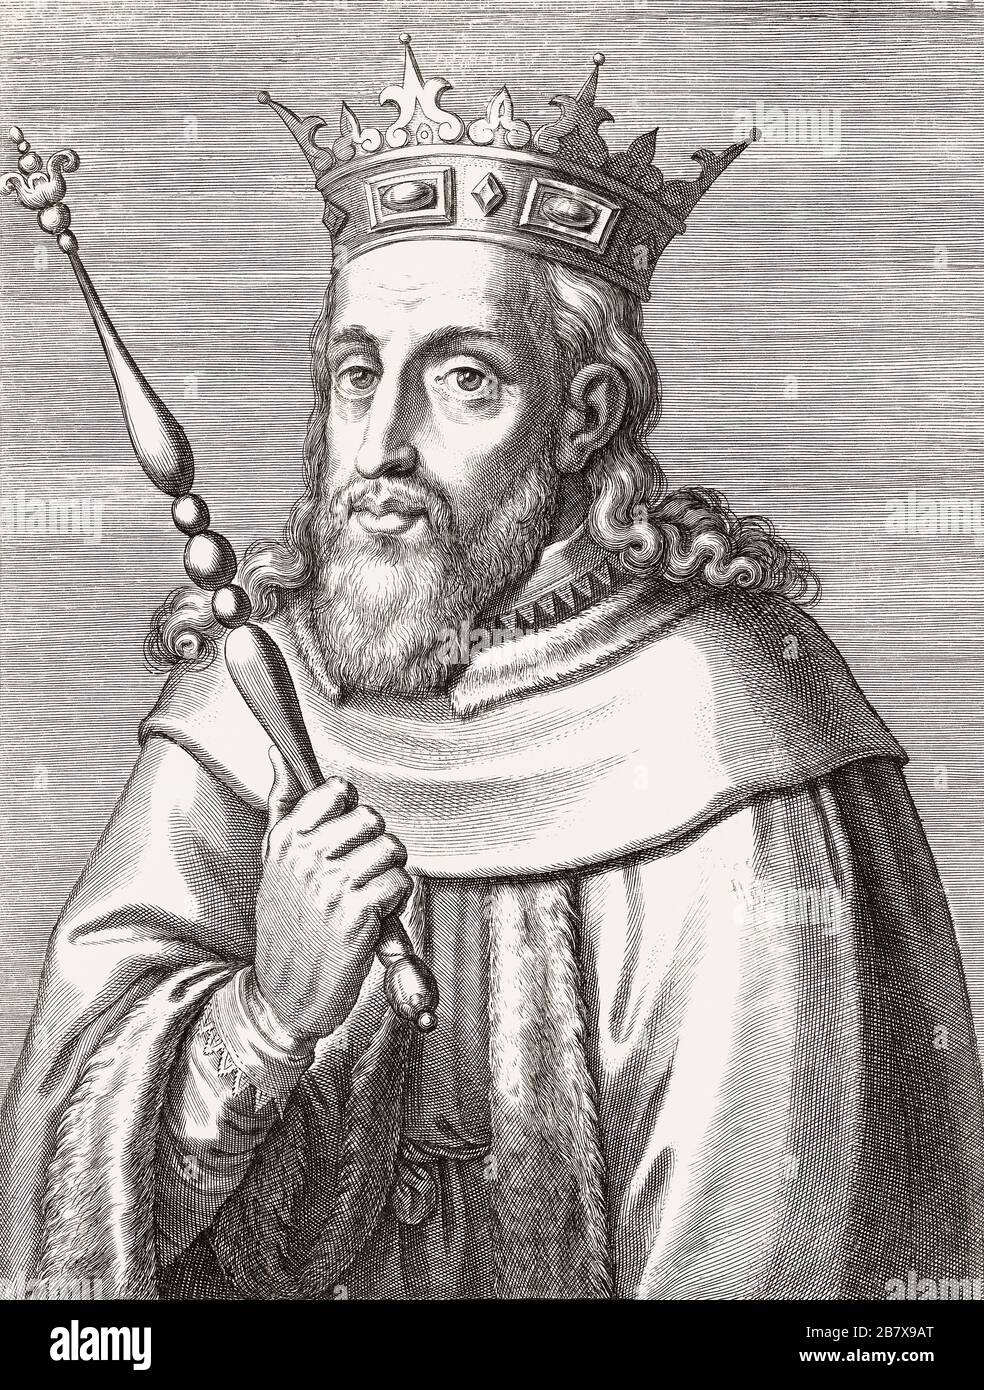 König Sancho II. Von Portugal, 1209-1248. Der Spitzname Ist Der Fromme. Nach einer Gravur aus dem 17. Jahrhundert. Stockfoto